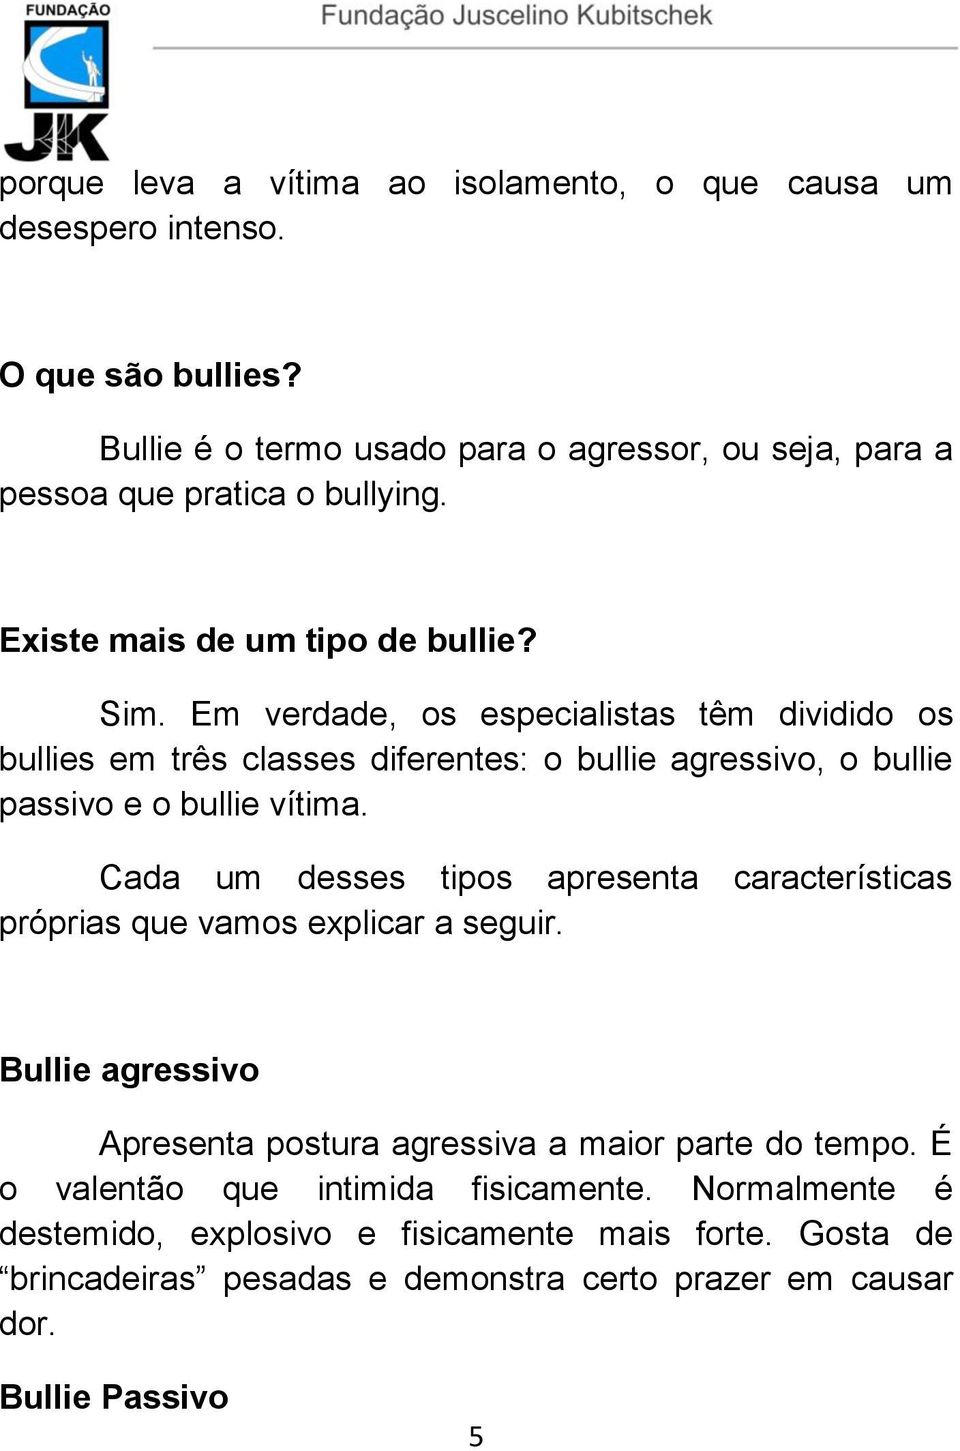 Em verdade, os especialistas têm dividido os bullies em três classes diferentes: o bullie agressivo, o bullie passivo e o bullie vítima.